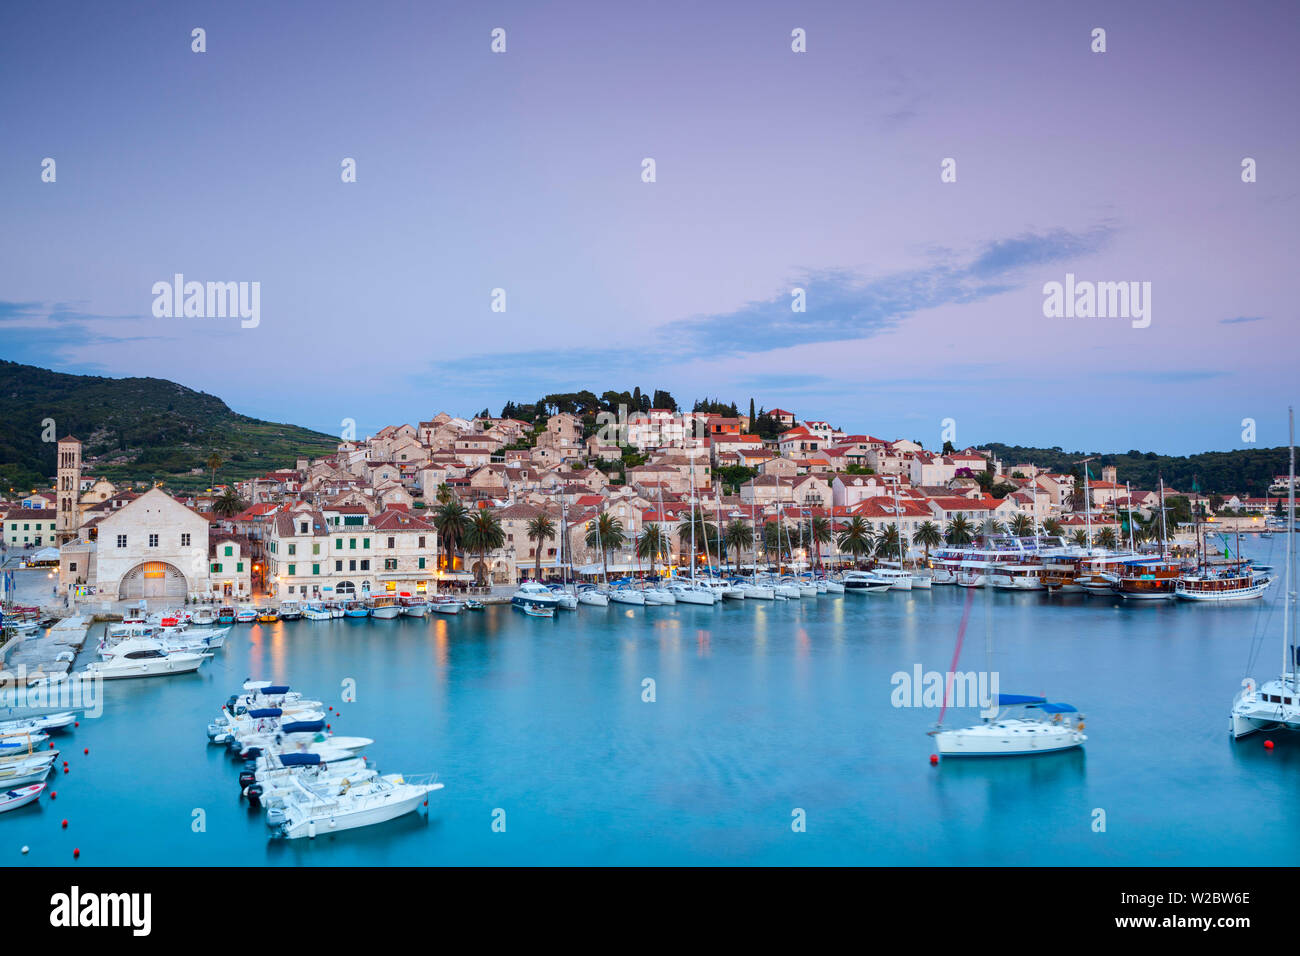 Des vue sur le port pittoresque ville de Hvar allumé au crépuscule, Hvar, Dalmatie, Croatie Banque D'Images